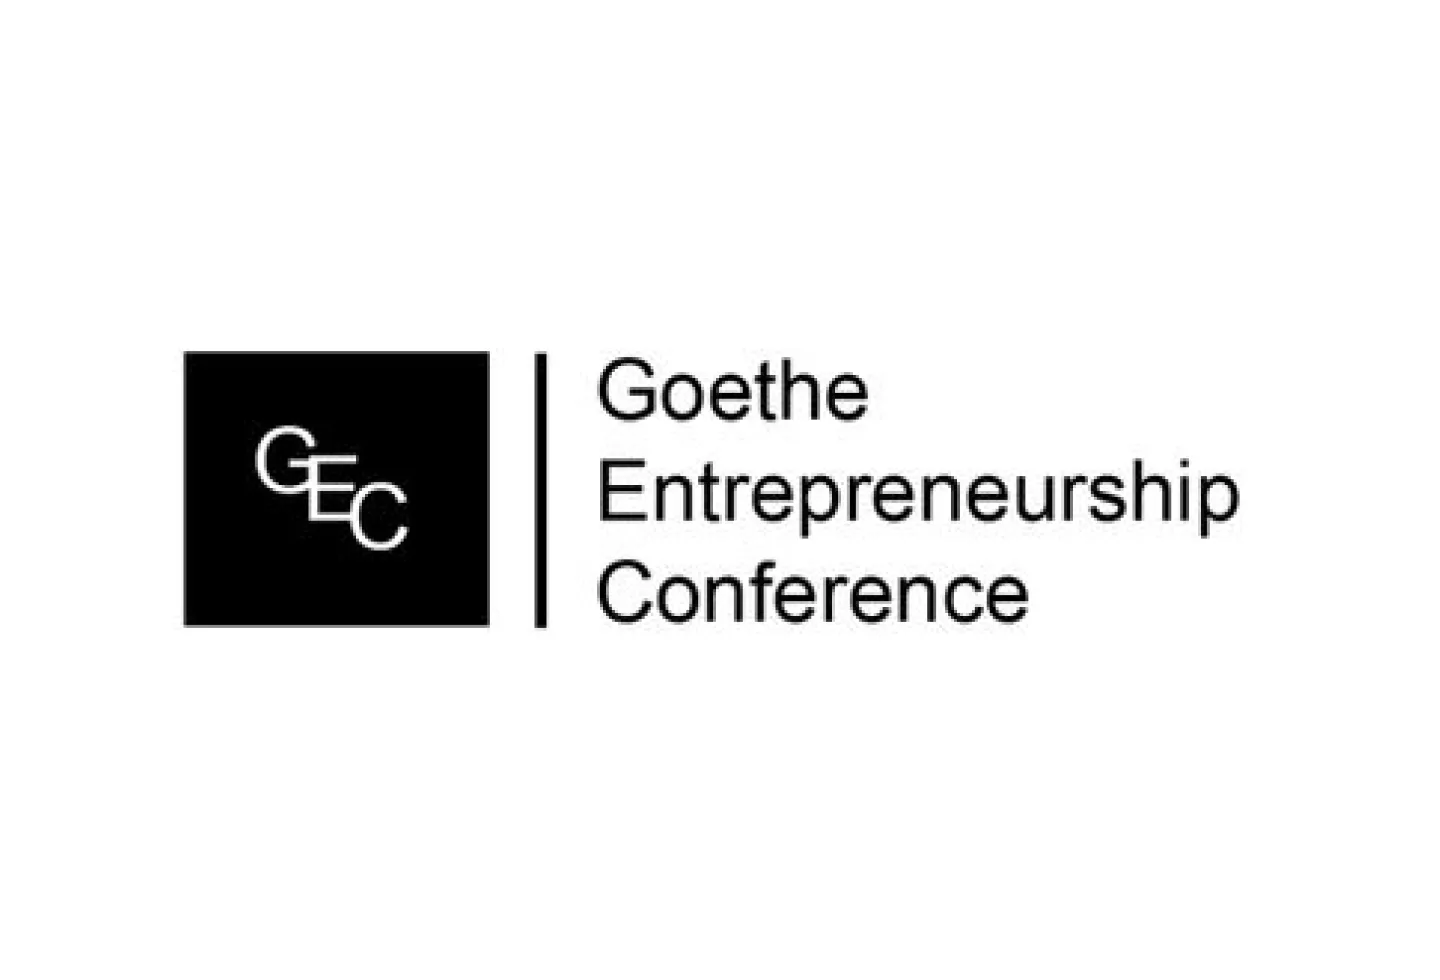 Image: Goethe Entrepreneurship Conference